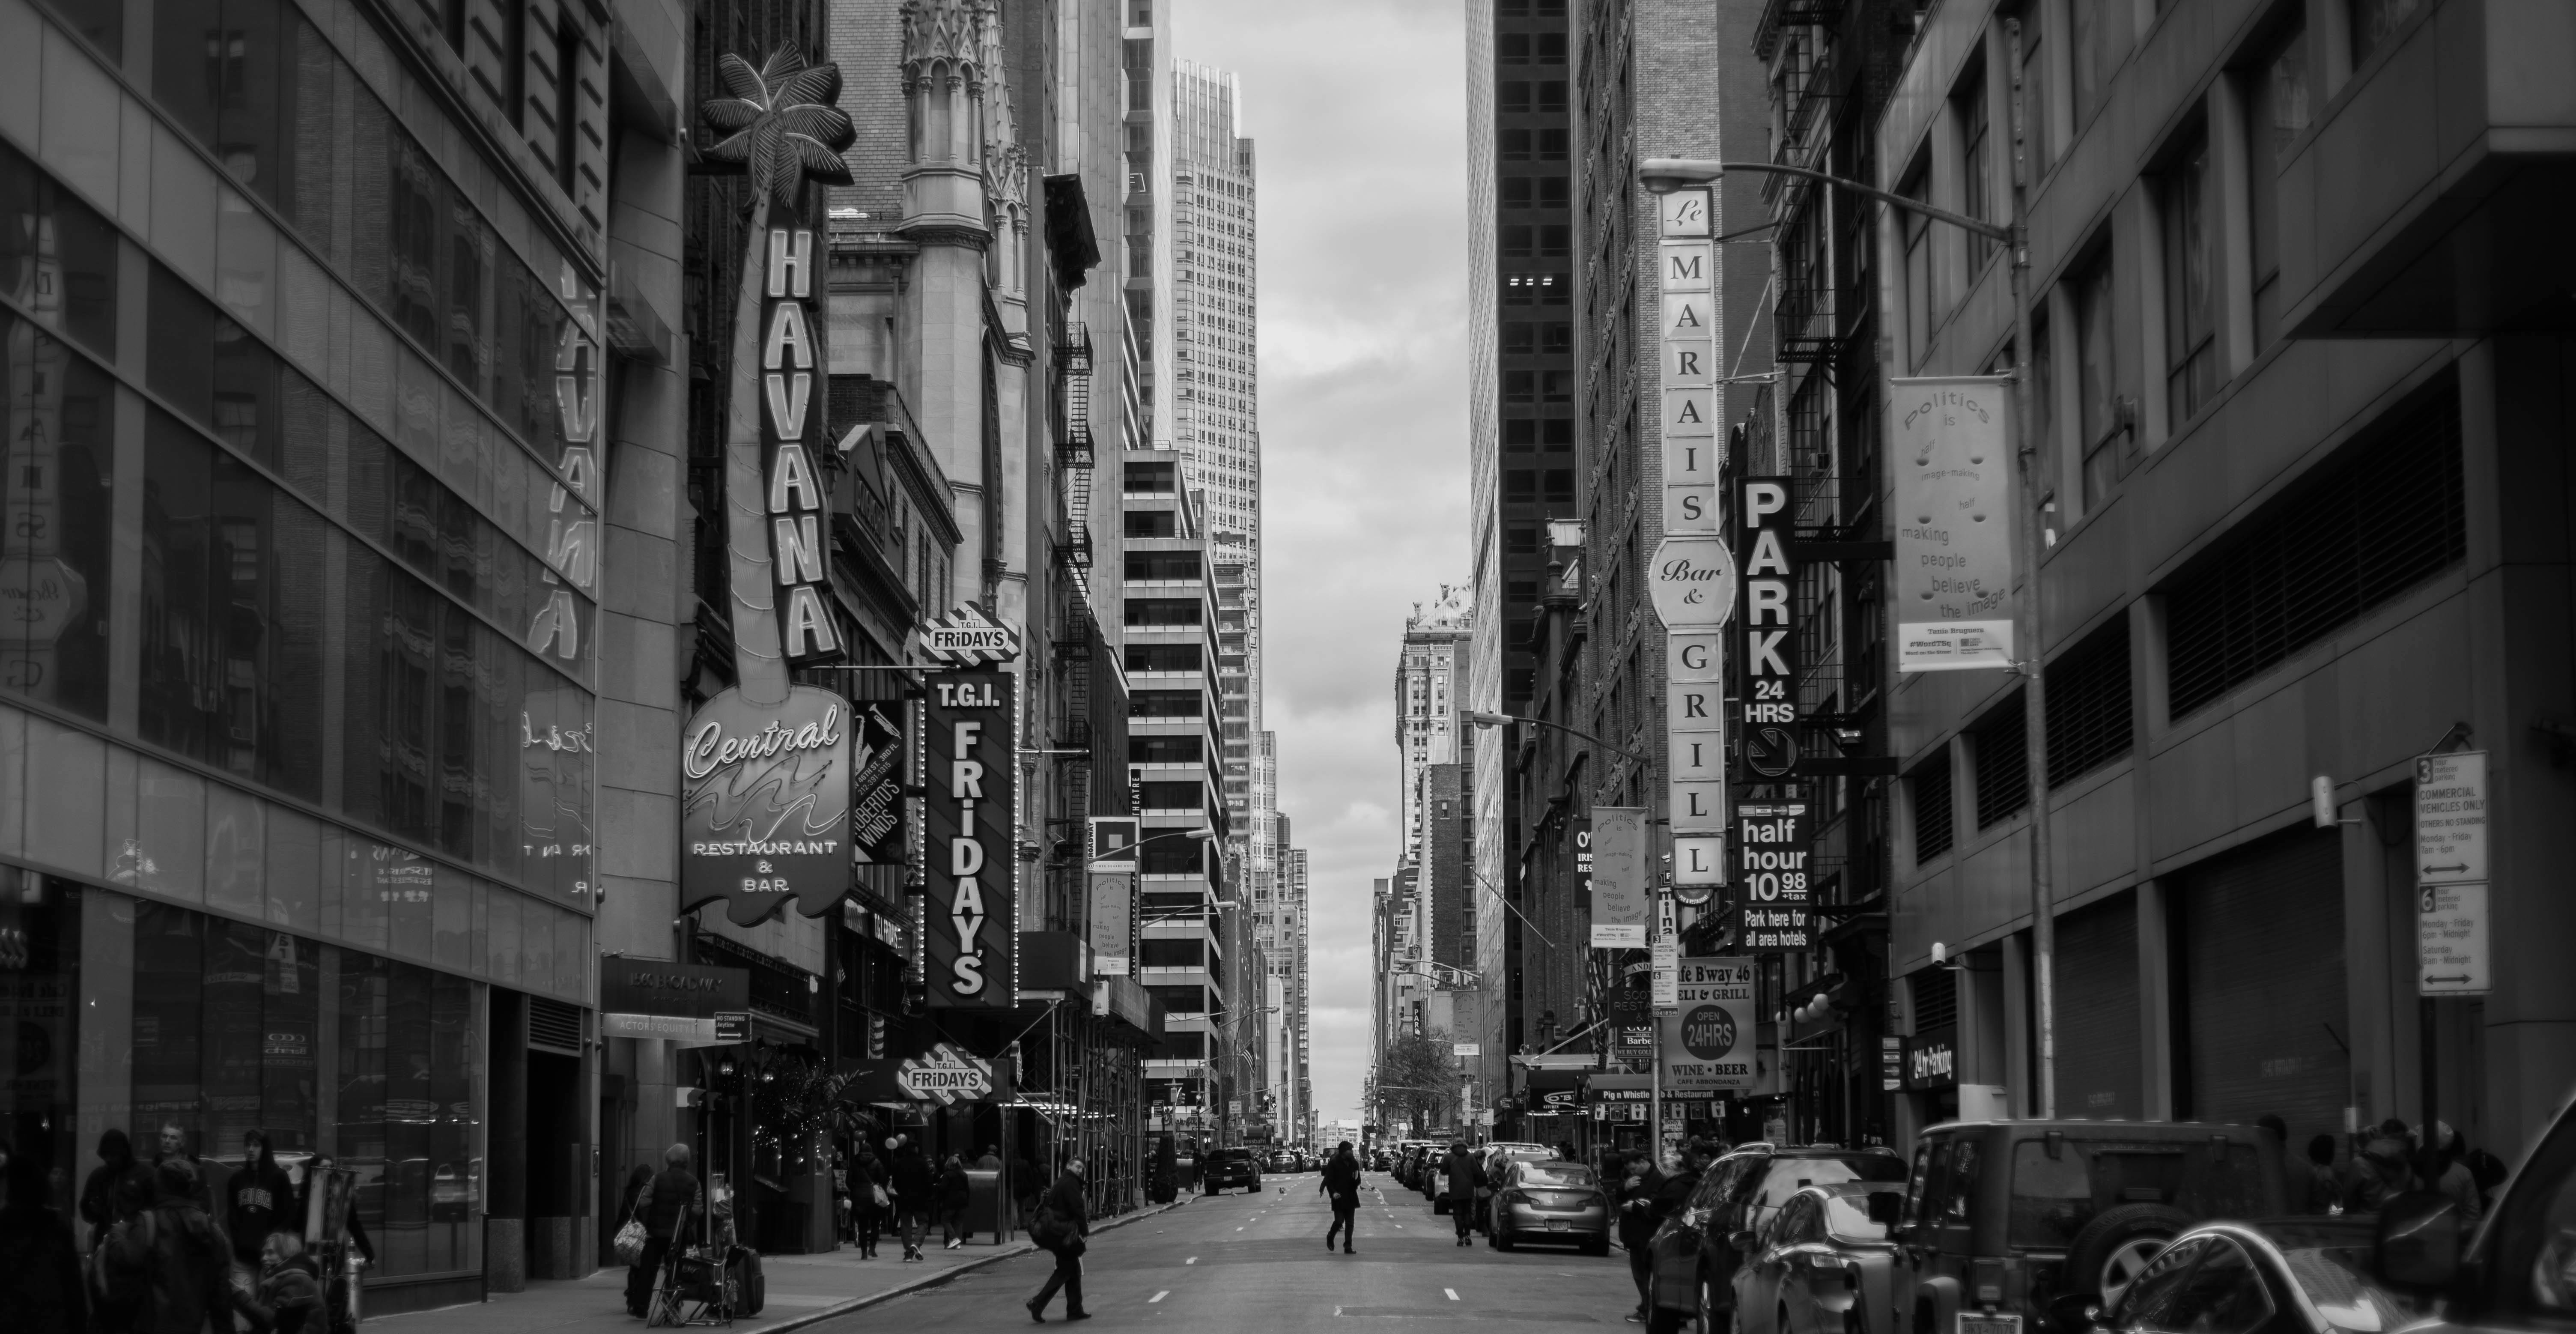 Thành phố đen trắng: Thành phố đen trắng luôn có một sức hút lạ kỳ. Nếu bạn muốn tham quan những góc phố tuyệt đẹp của những thập niên 50, bức ảnh này sẽ khiến bạn liên tưởng ngay đến những thước phim cổ điển.